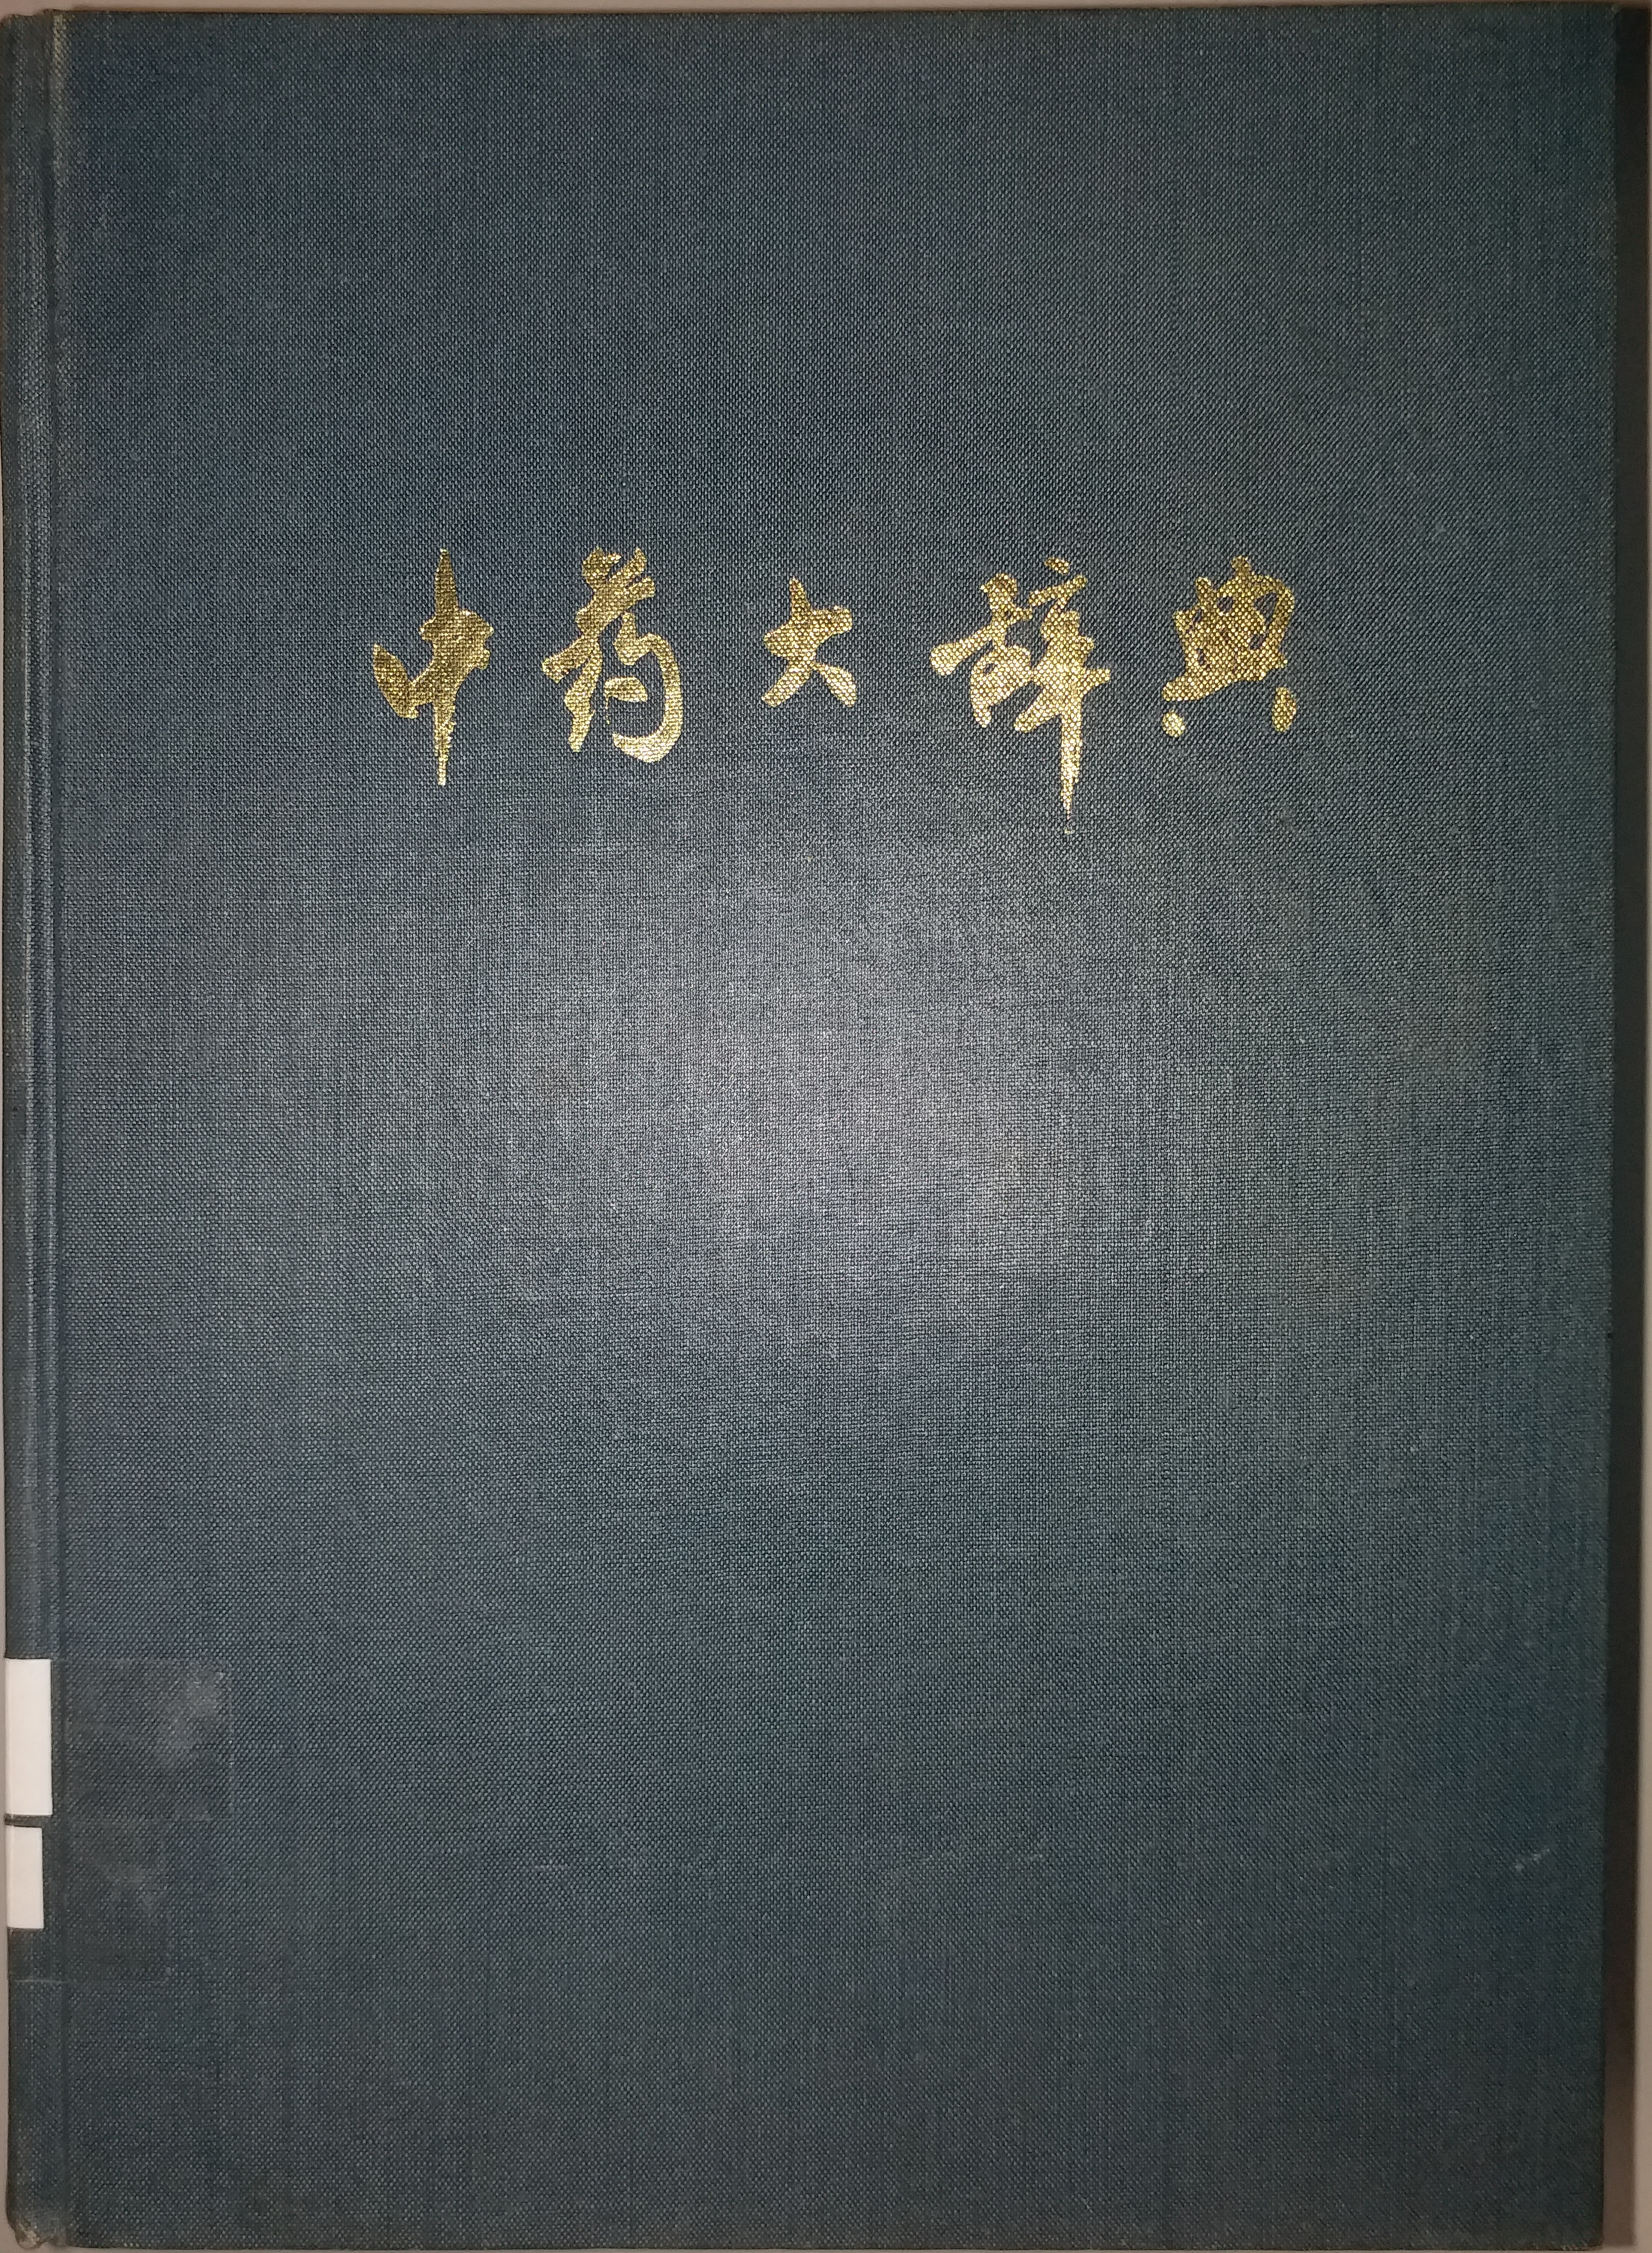 中藥大辭典 (上冊) (上海人民出版社)